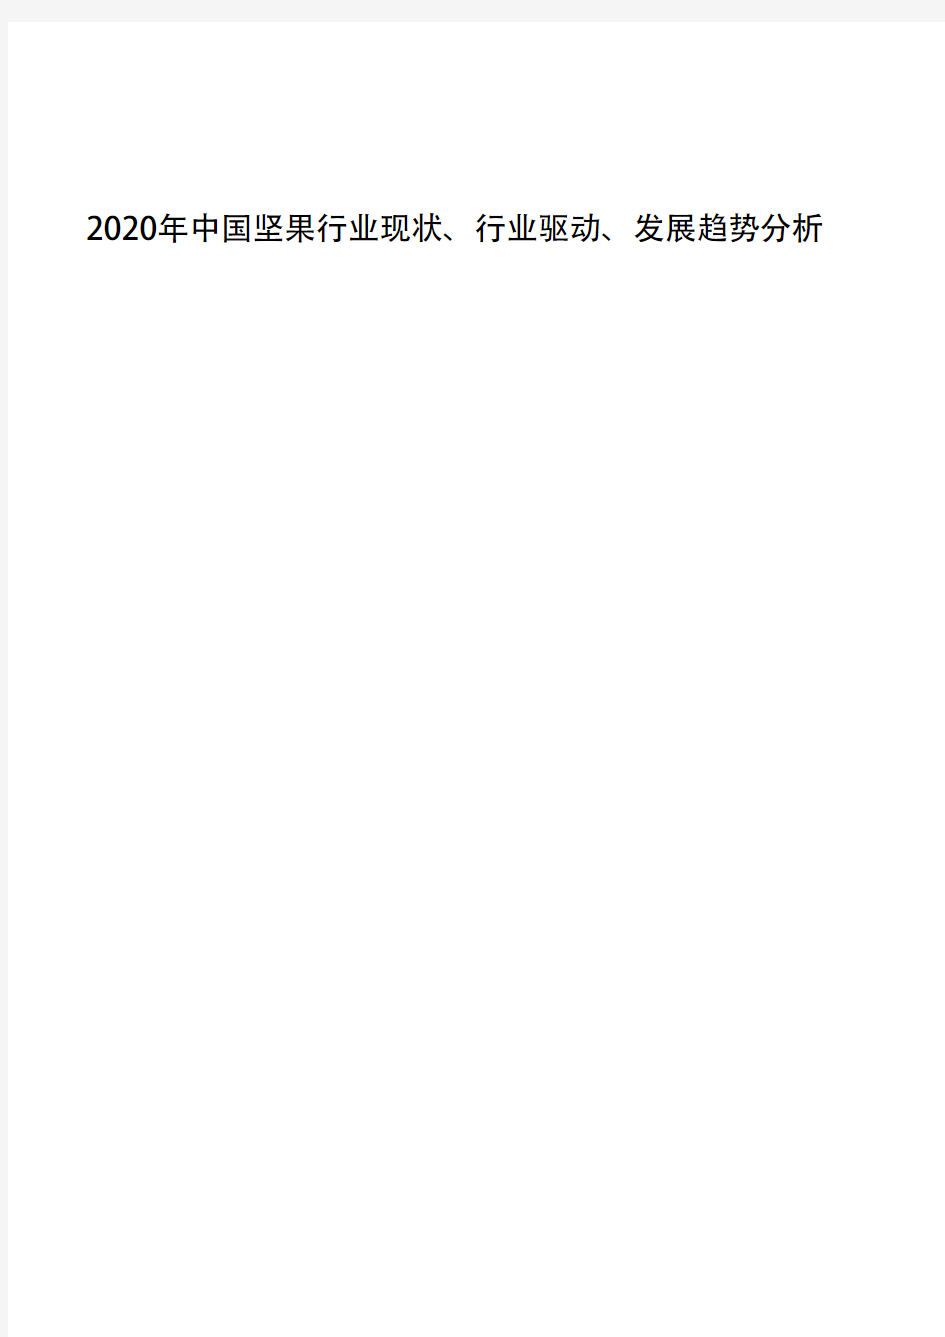 2020年中国坚果行业现状、行业驱动、发展趋势分析